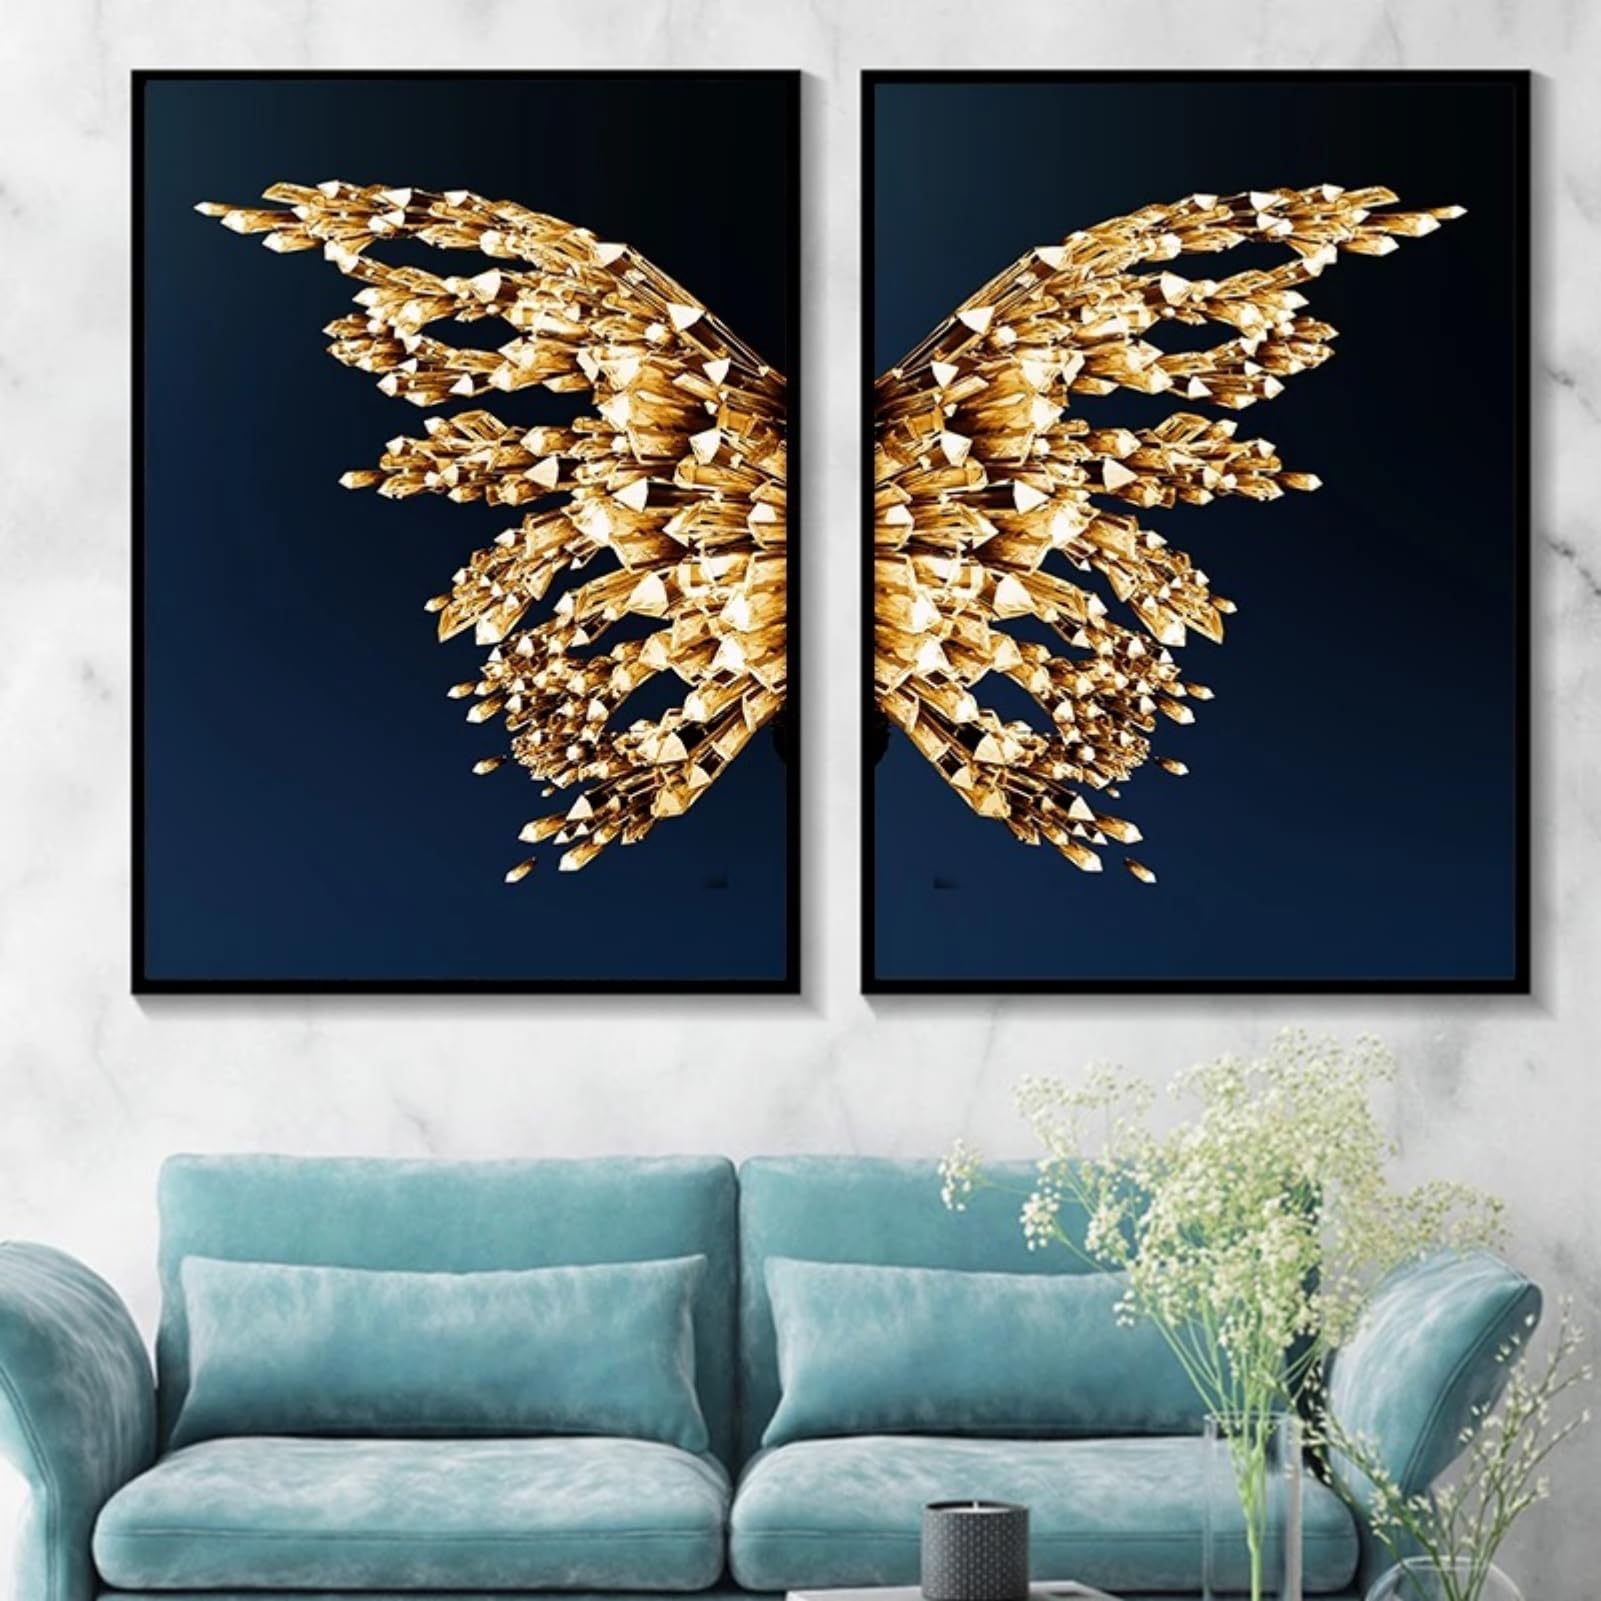 EXQUILEG 2er Goldener Schmetterling Poster Set, Moderne Goldener Schmetterling Wanddekoration Minimalistische Stil Leinwand Wandkunst Bilder Ohne Rahmen (60 * 85cm)